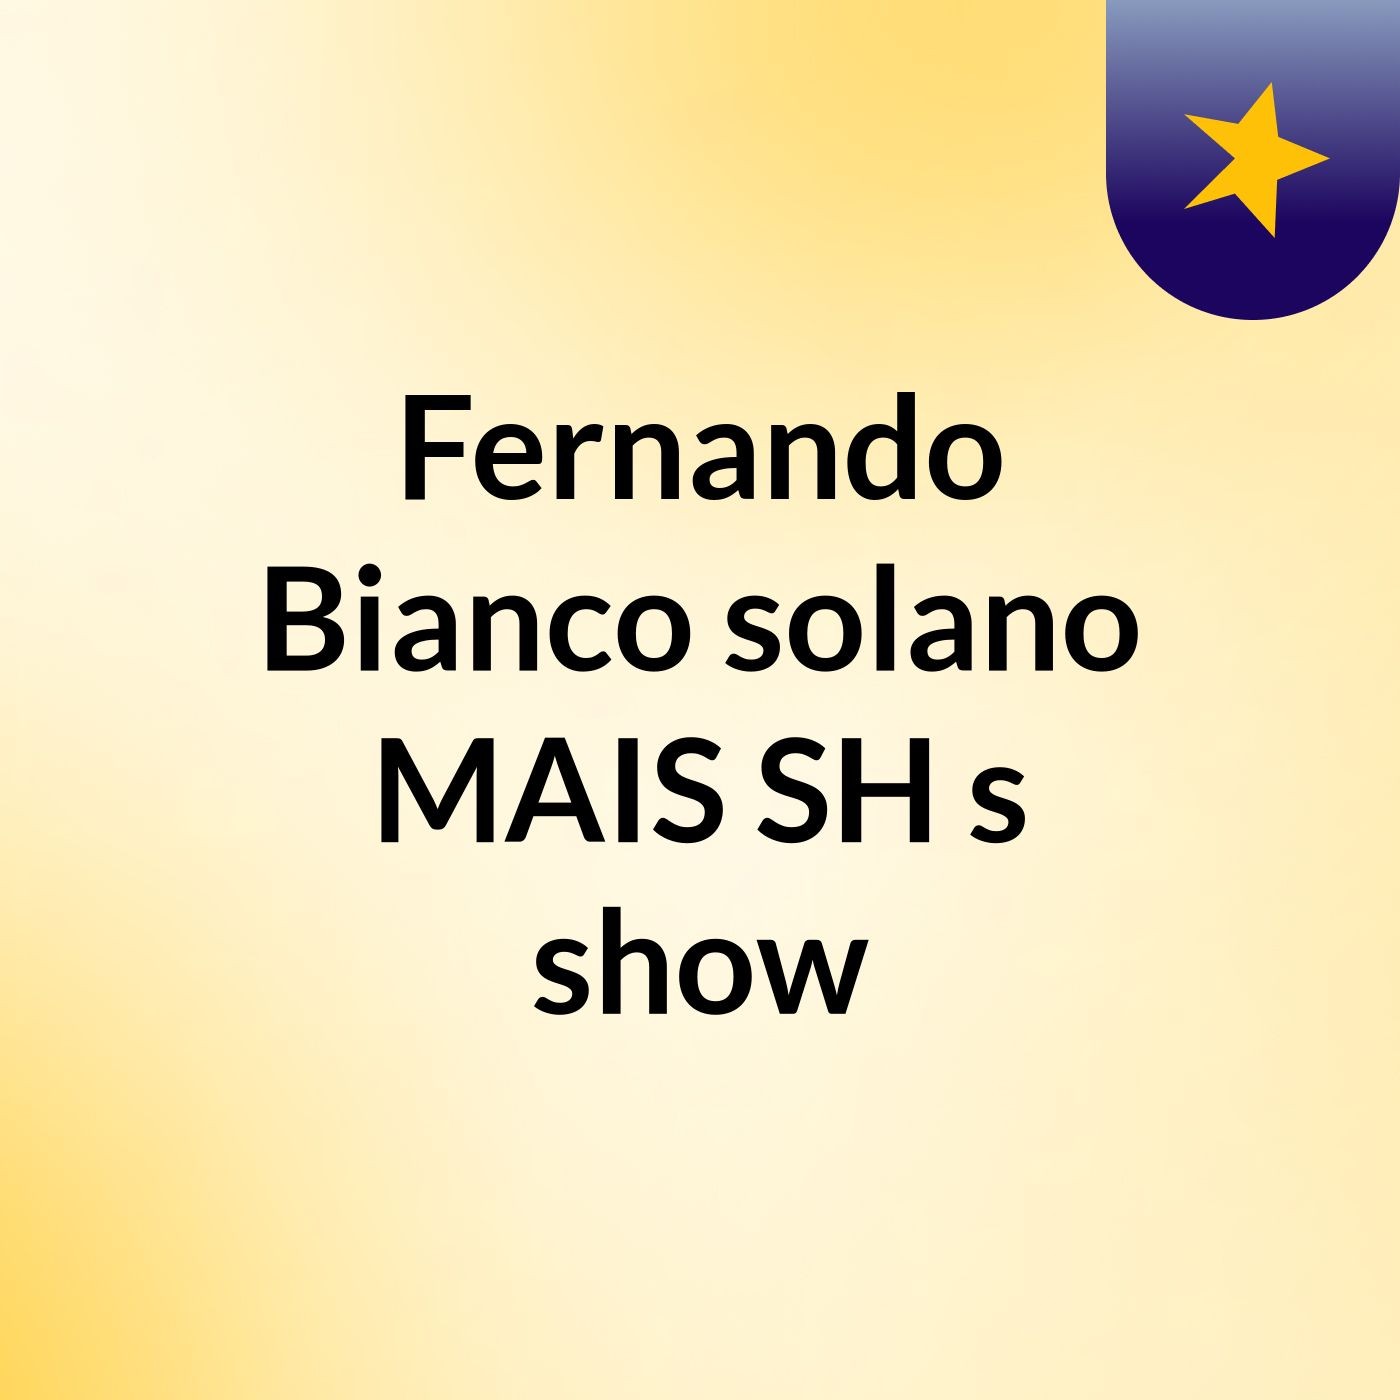 Fernando Bianco solano MAIS SH's show